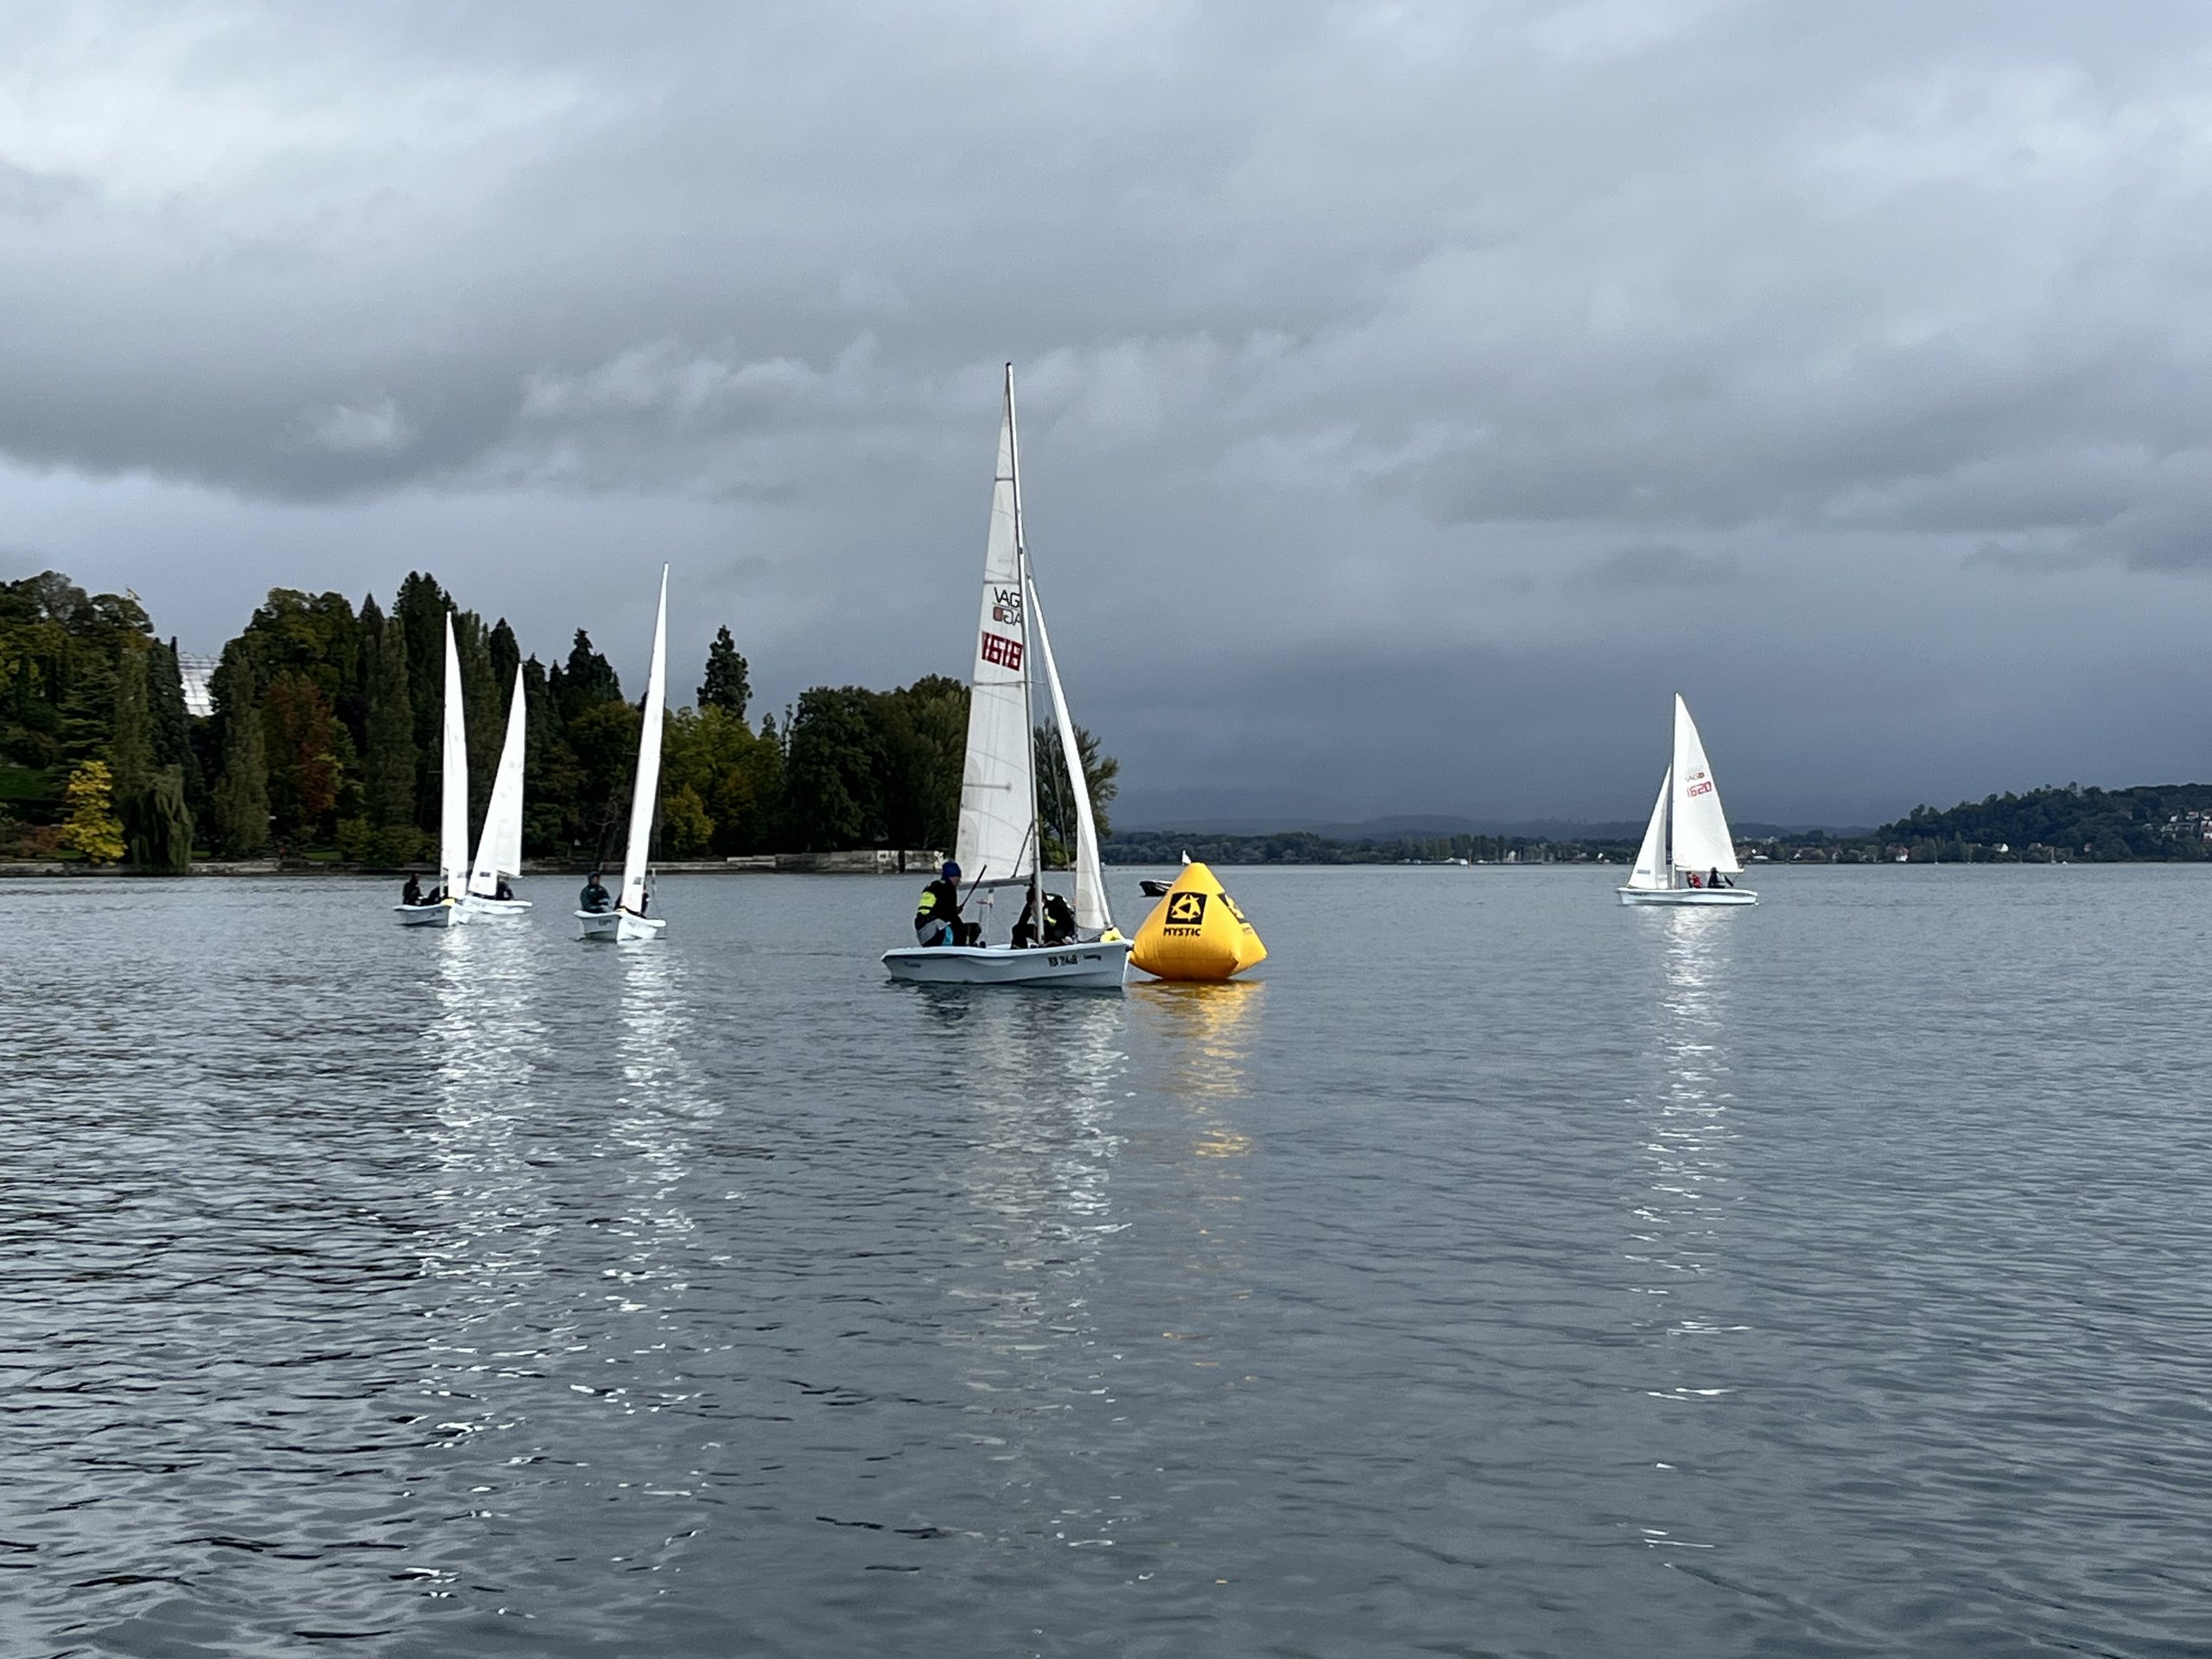 adh-Trophy deutscher Segelwettbewerb in Konstanz 2022